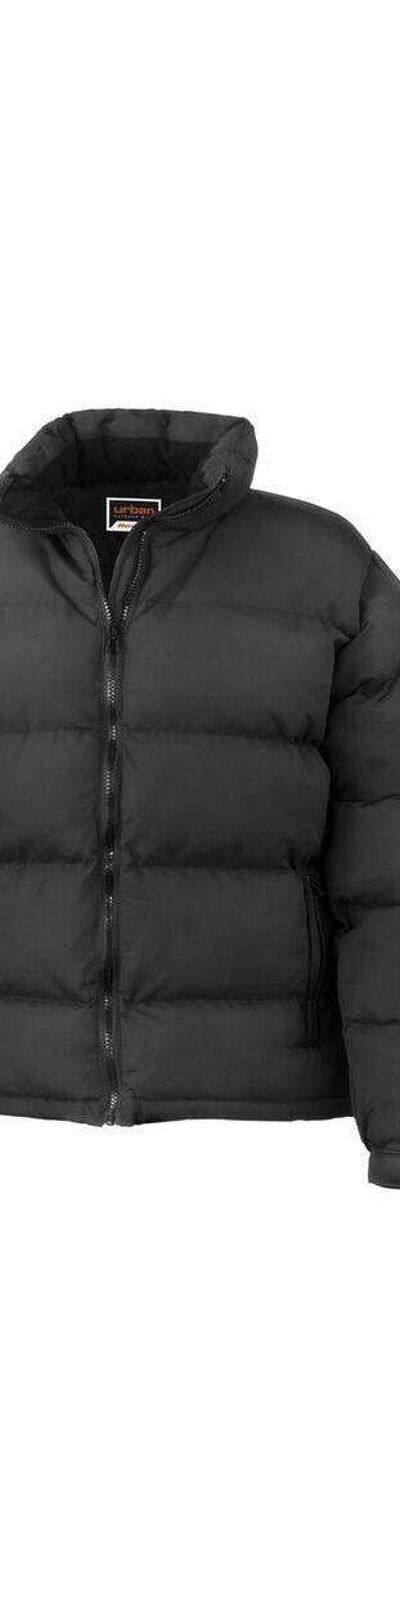 Doudoune manteau d'hiver imperméable léger et chaud FEMME Result